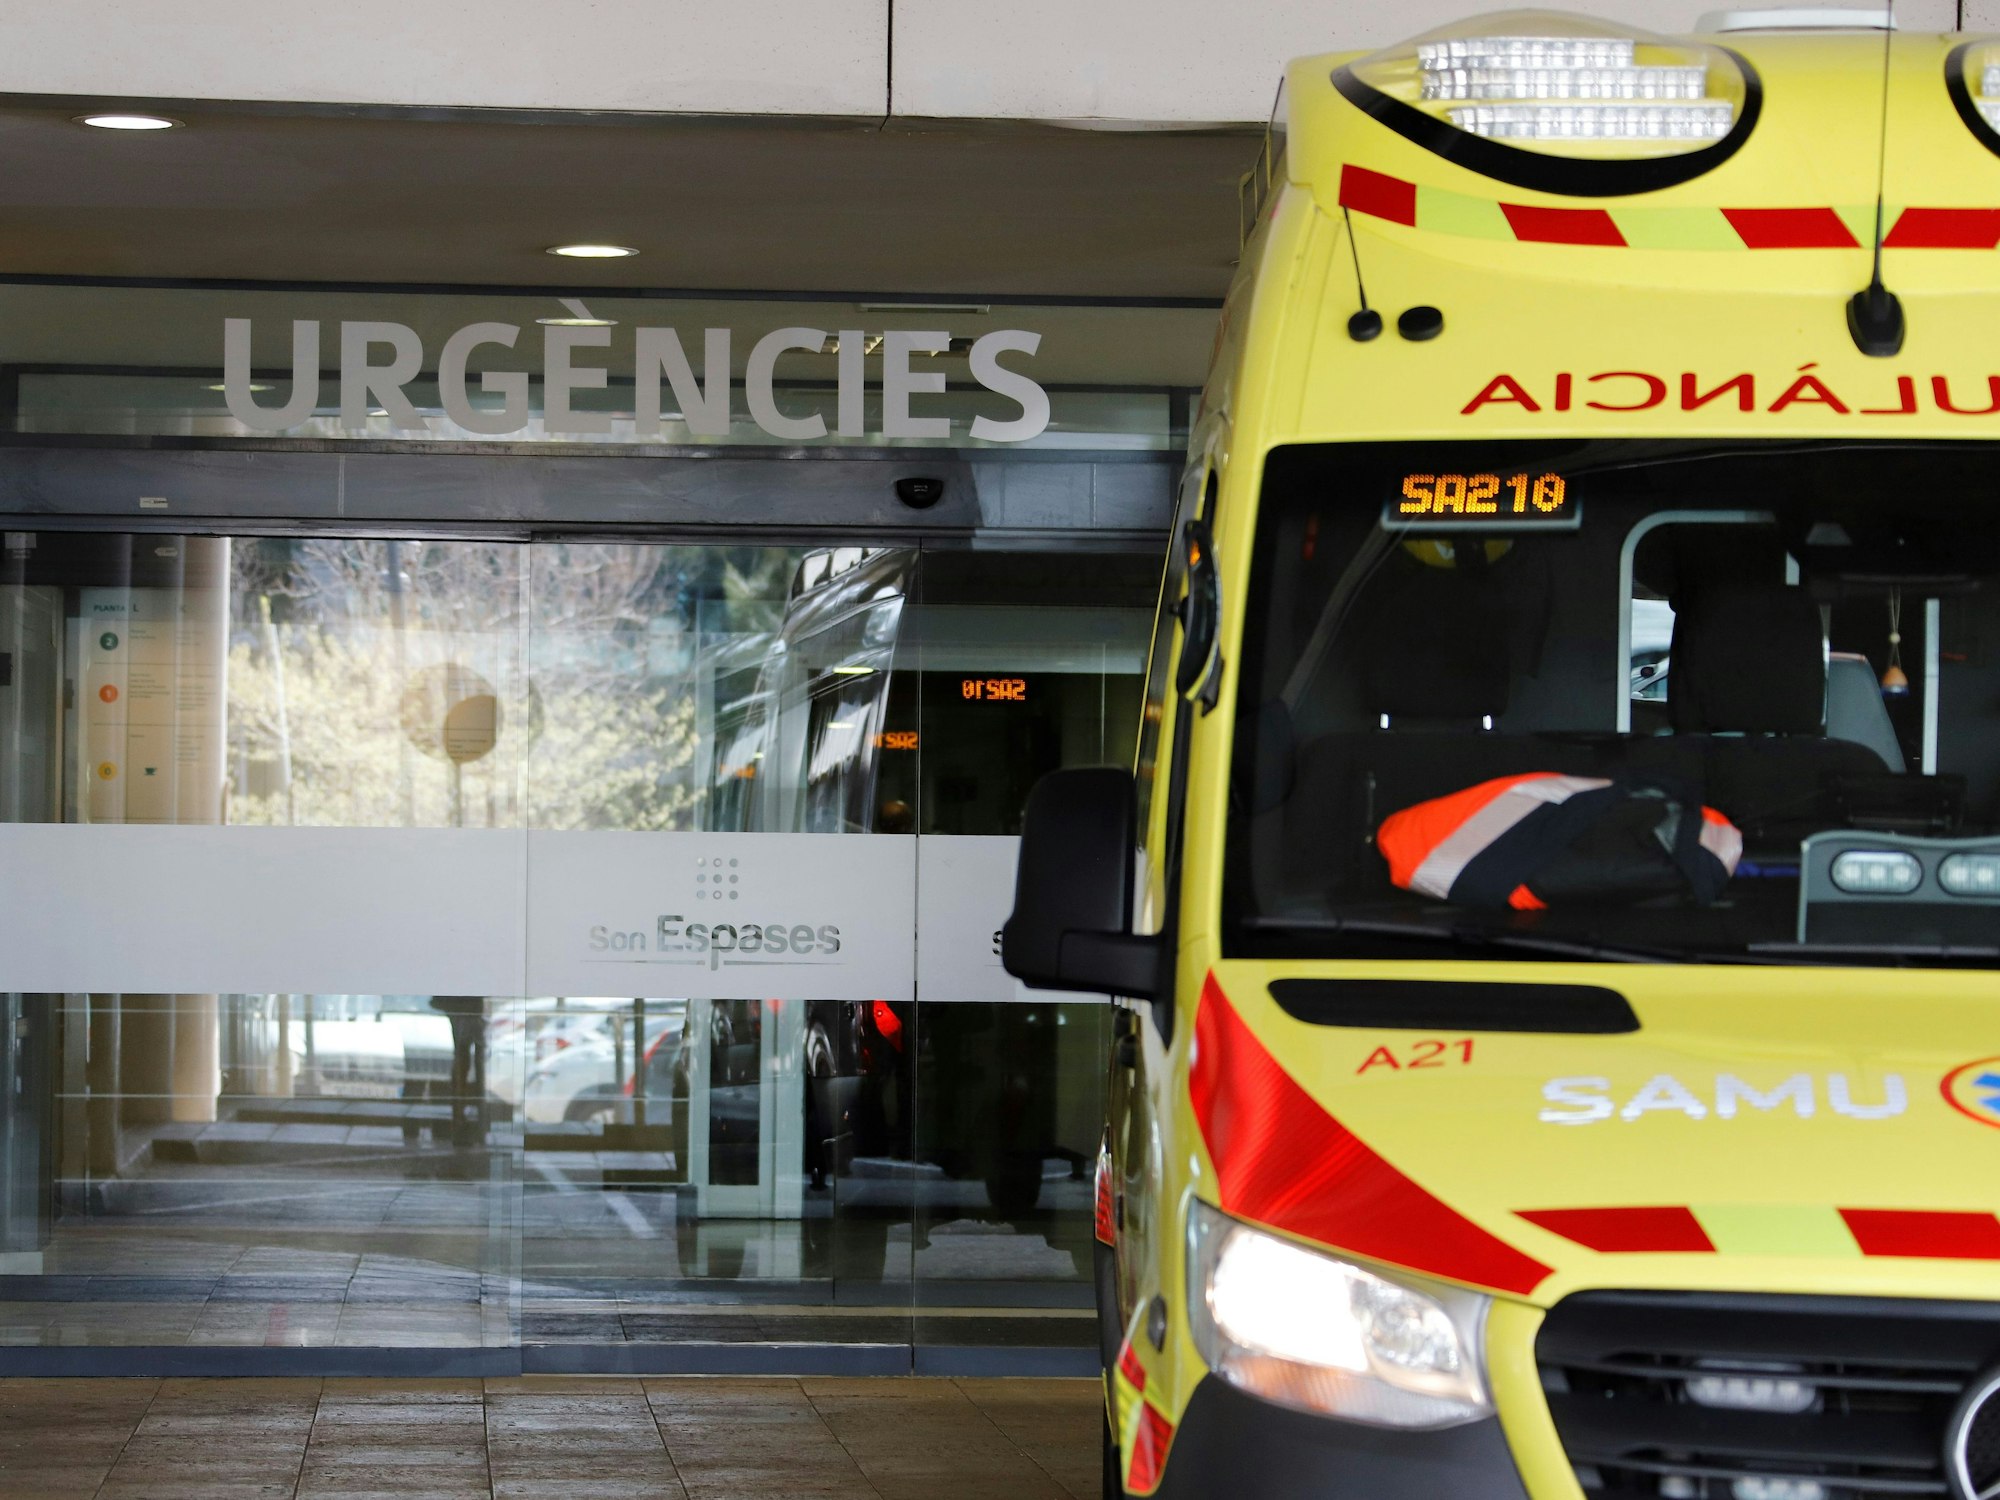 Die Grippe-Welle stellt die Krankenhäuser und Notaufnahmen auf Mallorca vor eine schwere Herausvorderung. Unser Foto zeigt die Notaurnahme des Son Espases in Palma, wo die meisten Patienten auflaufen.